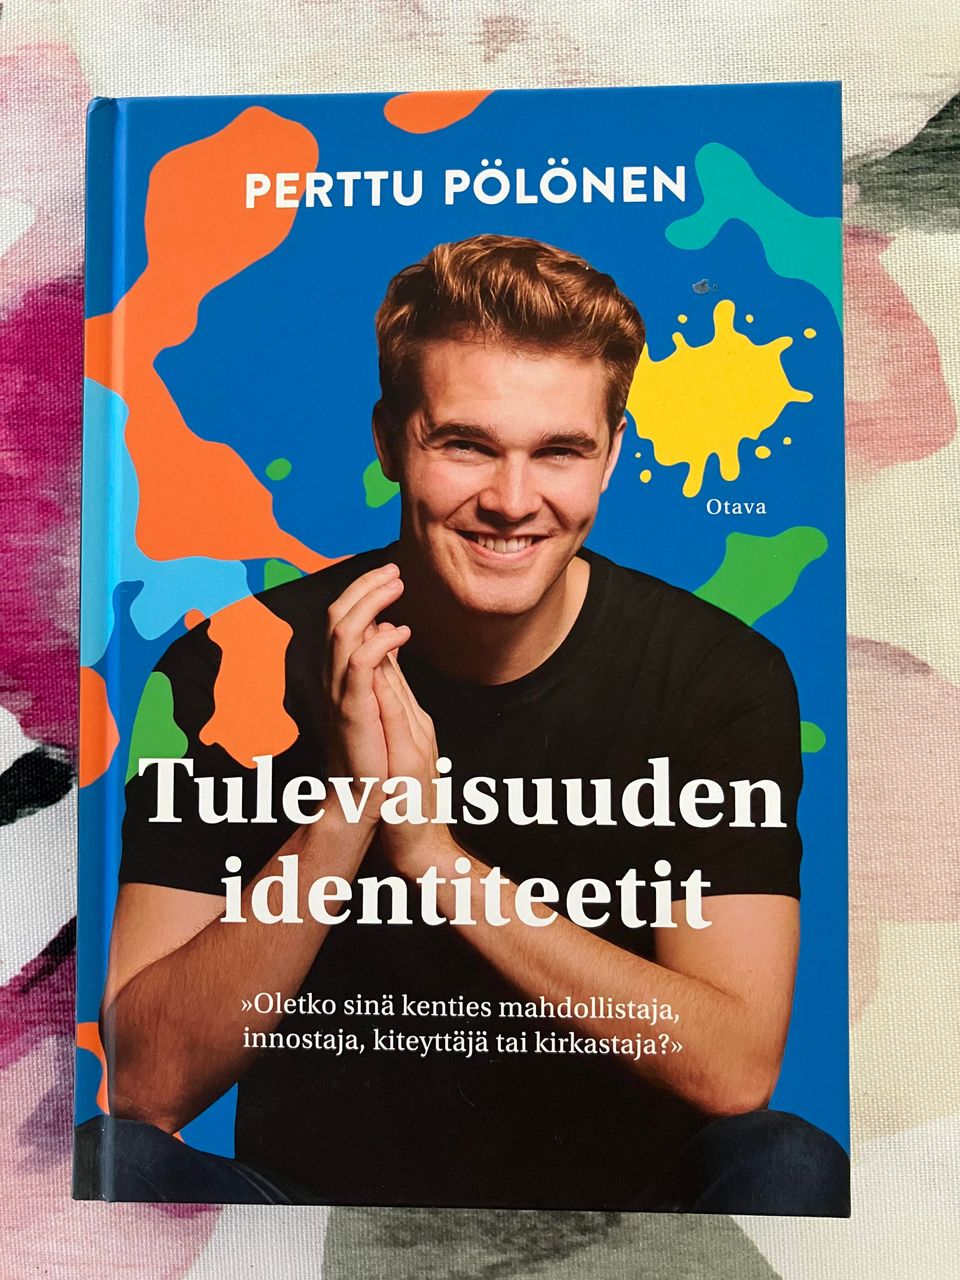 Perttu Pölönen : Tulevaisuuden identiteetit (signeerattu)